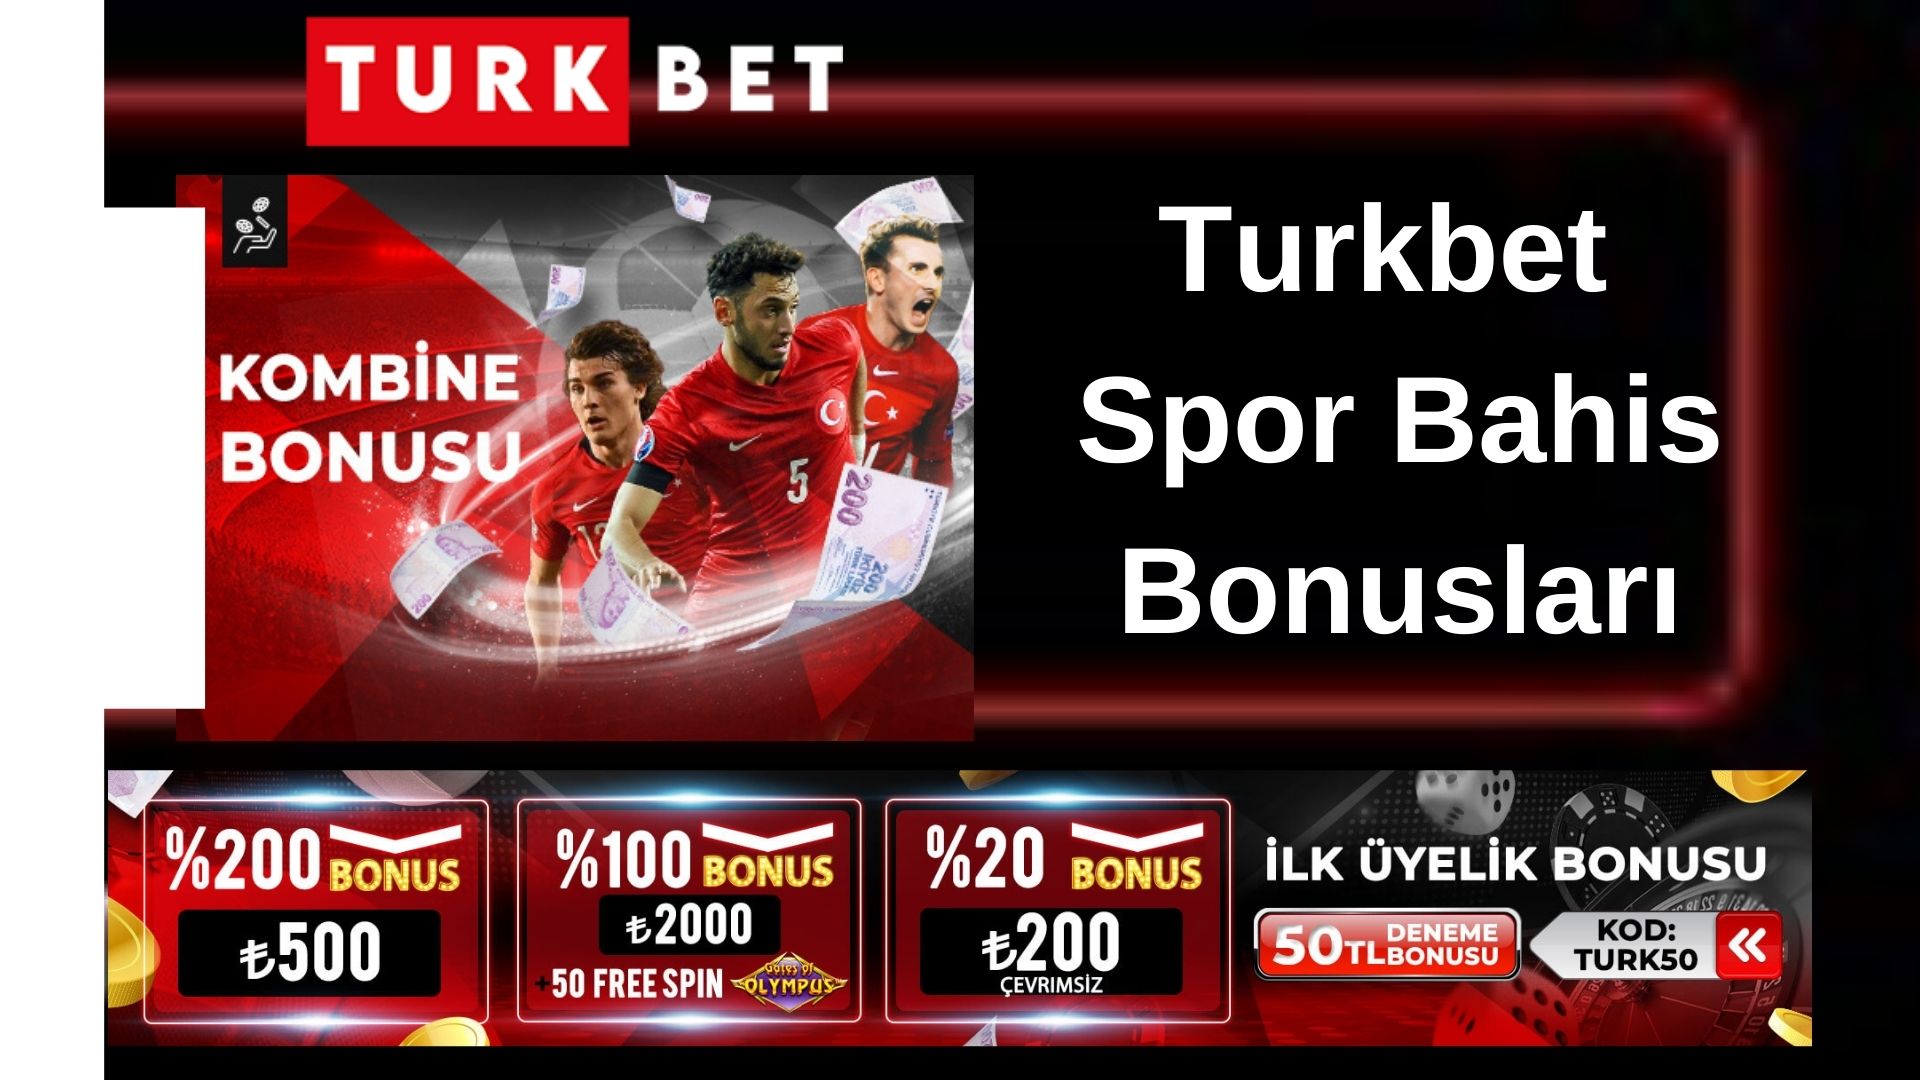 Turkbet-Spor-Bahis-Bonuslari.jpg 30 Mayıs 2023 240 KB 1920 x 1080 pixel Resmi düzenle Kalıcı olarak sil Alternatif metin Görselin amacını nasıl açıklayacağınızı öğrenin(yeni sekmede açılır). Görsel tamamen dekoratif amaçlı ise boş bırakın.Başlık Turkbet Spor Bahis Bonusları